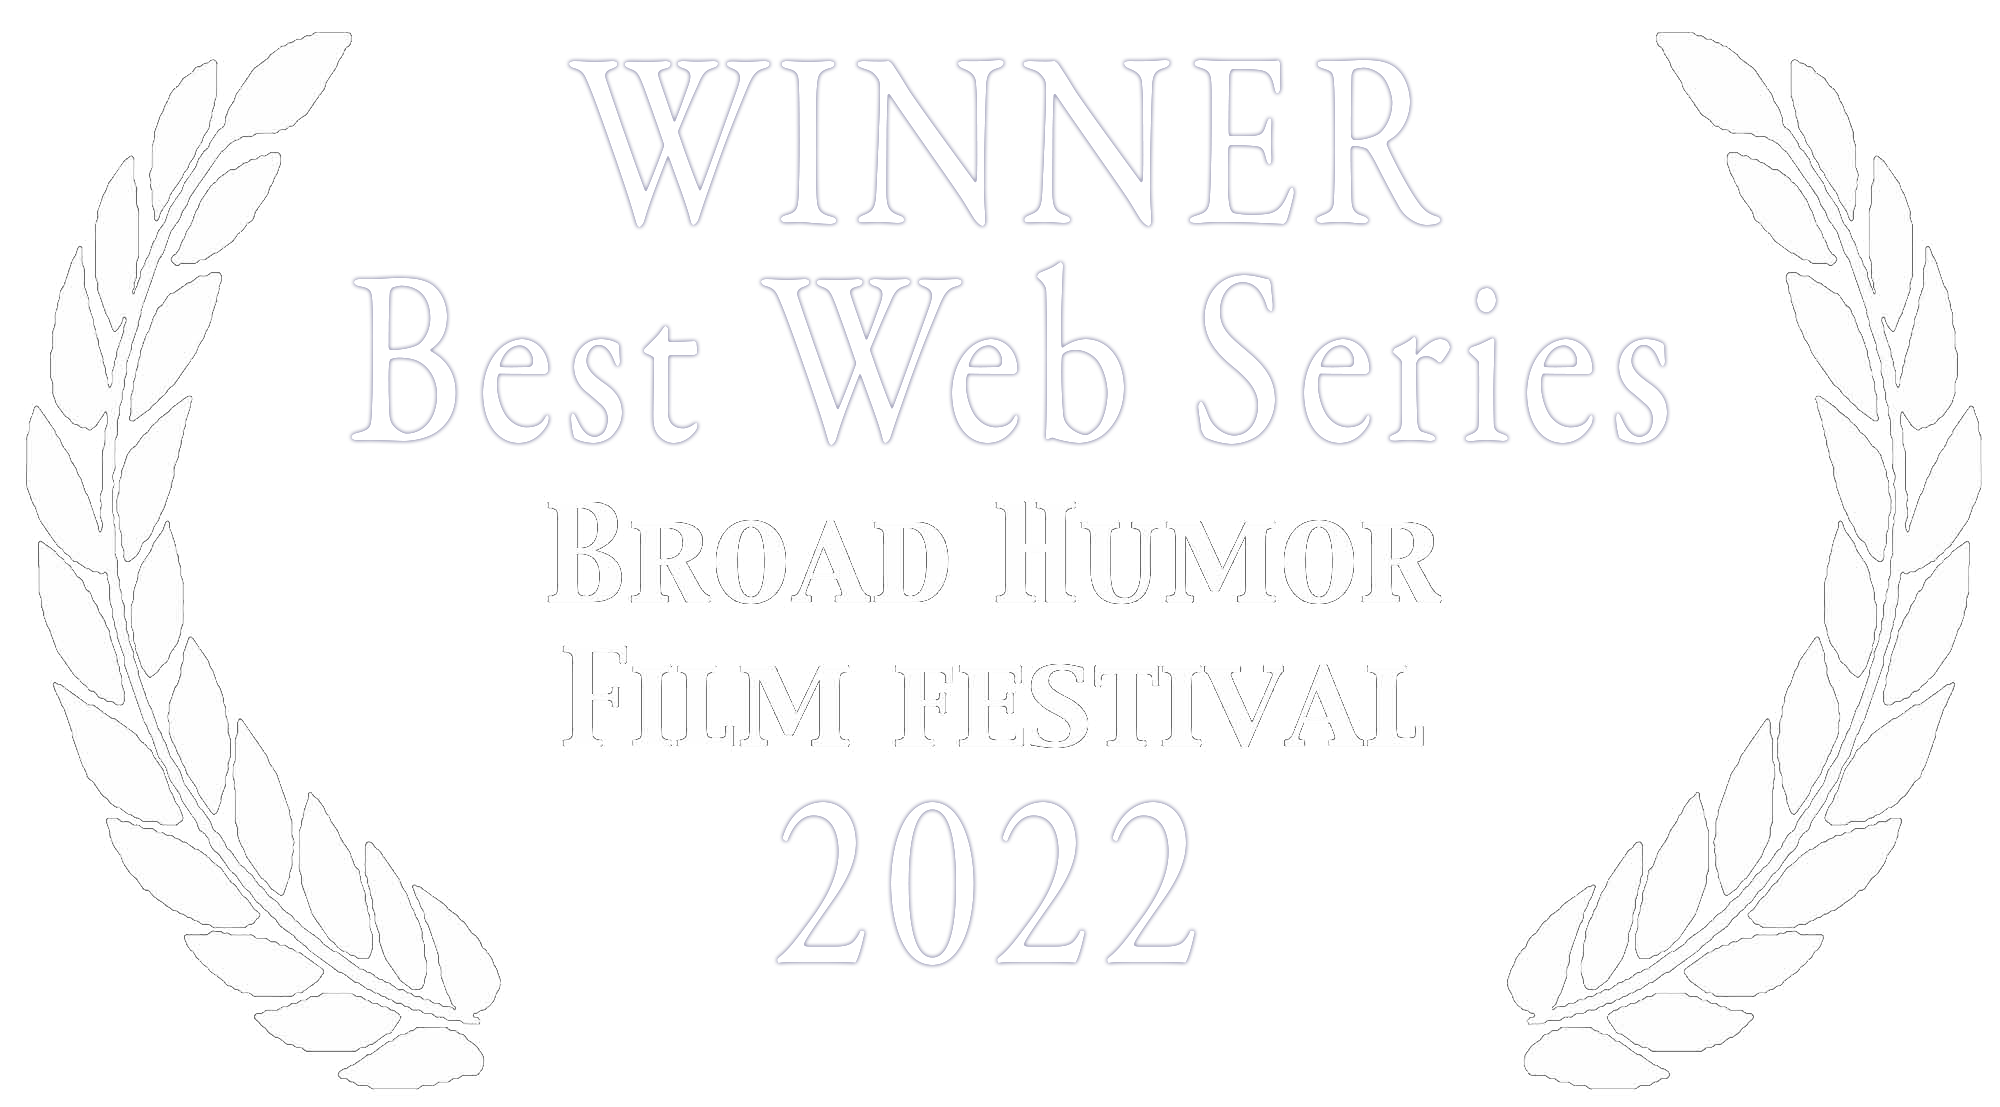 Winner Best Web Series Broad Humor Film Festival 2022